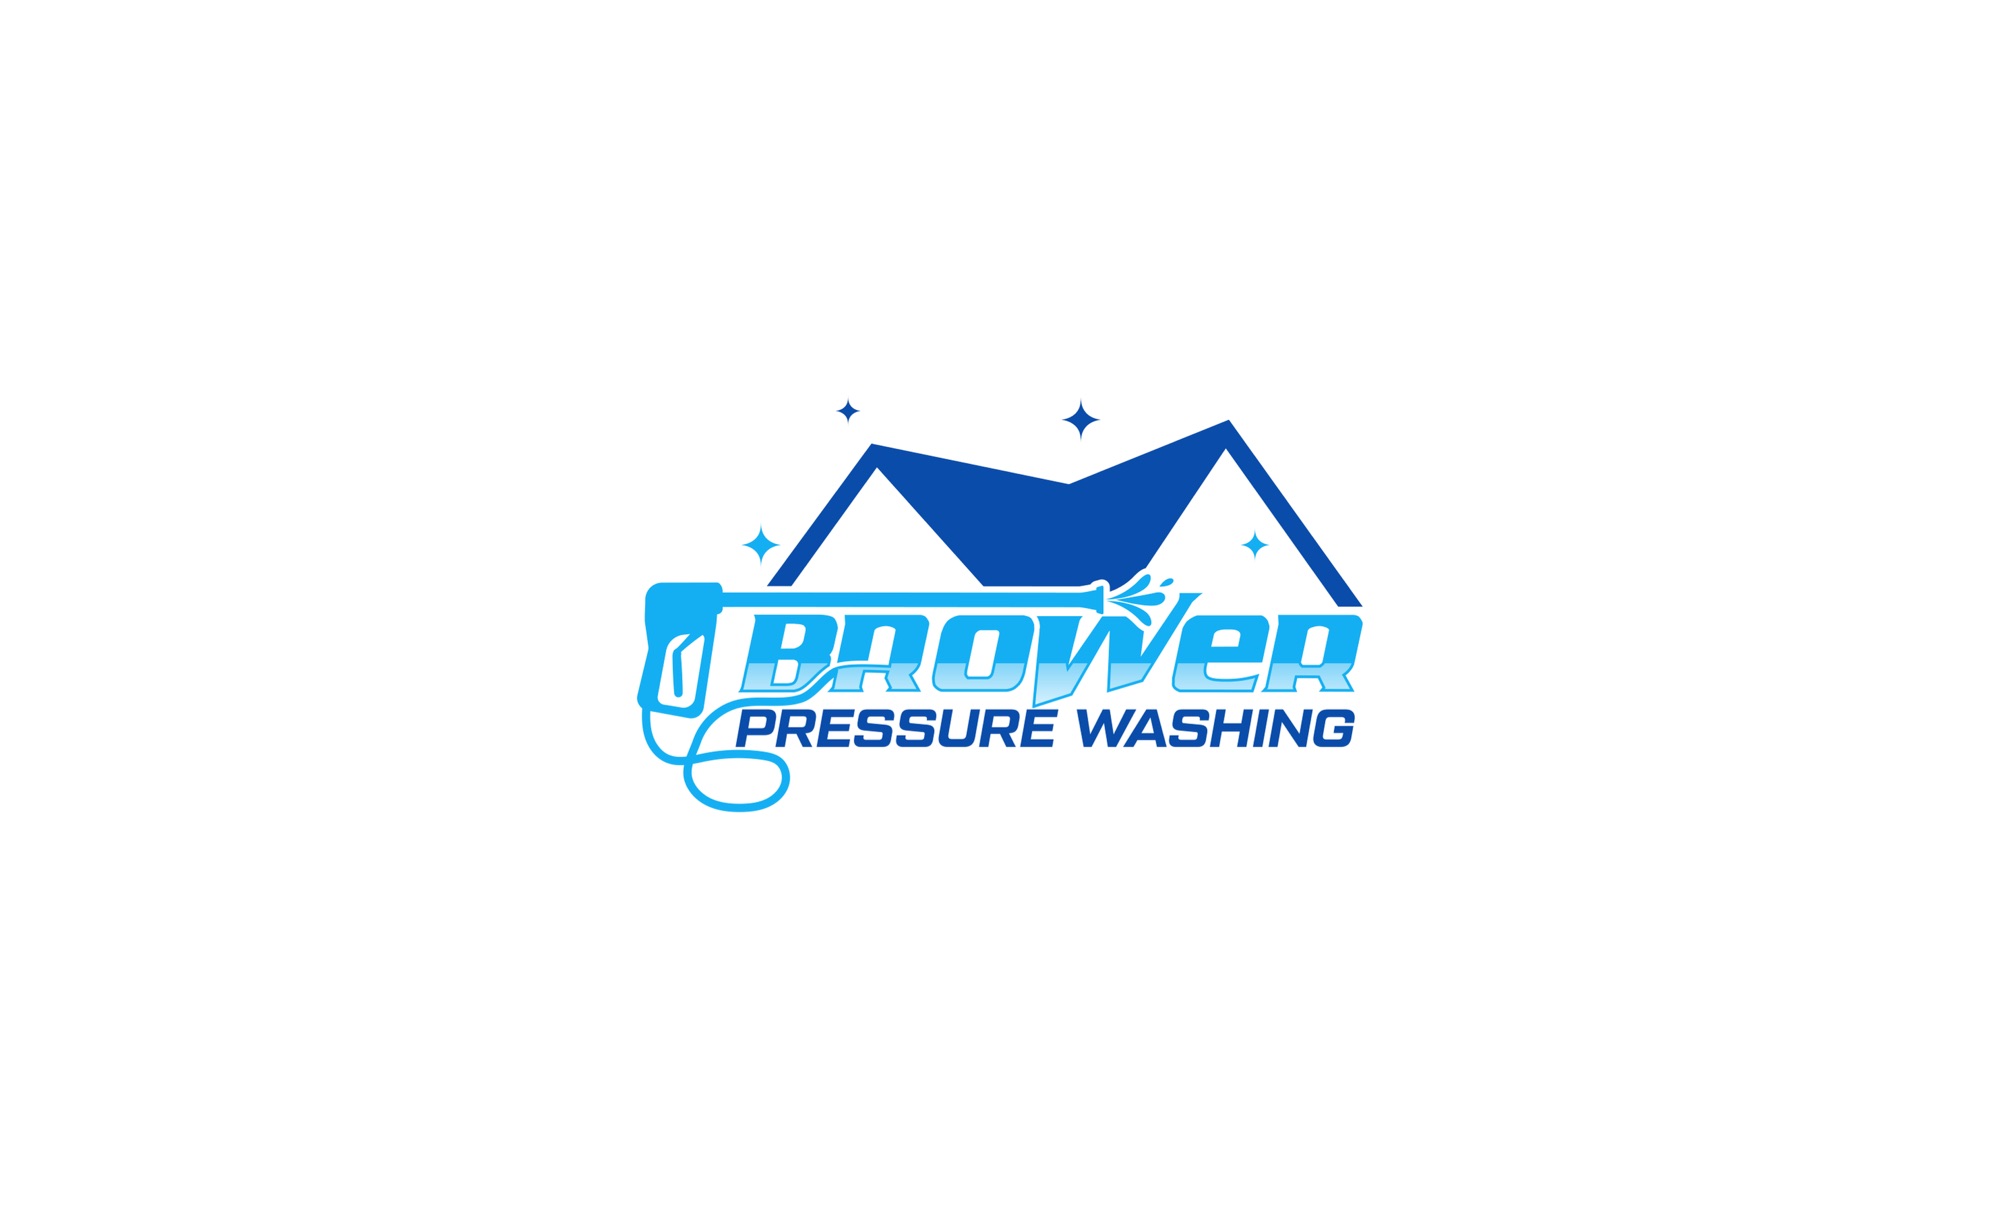 Brower Pressure Washing Logo